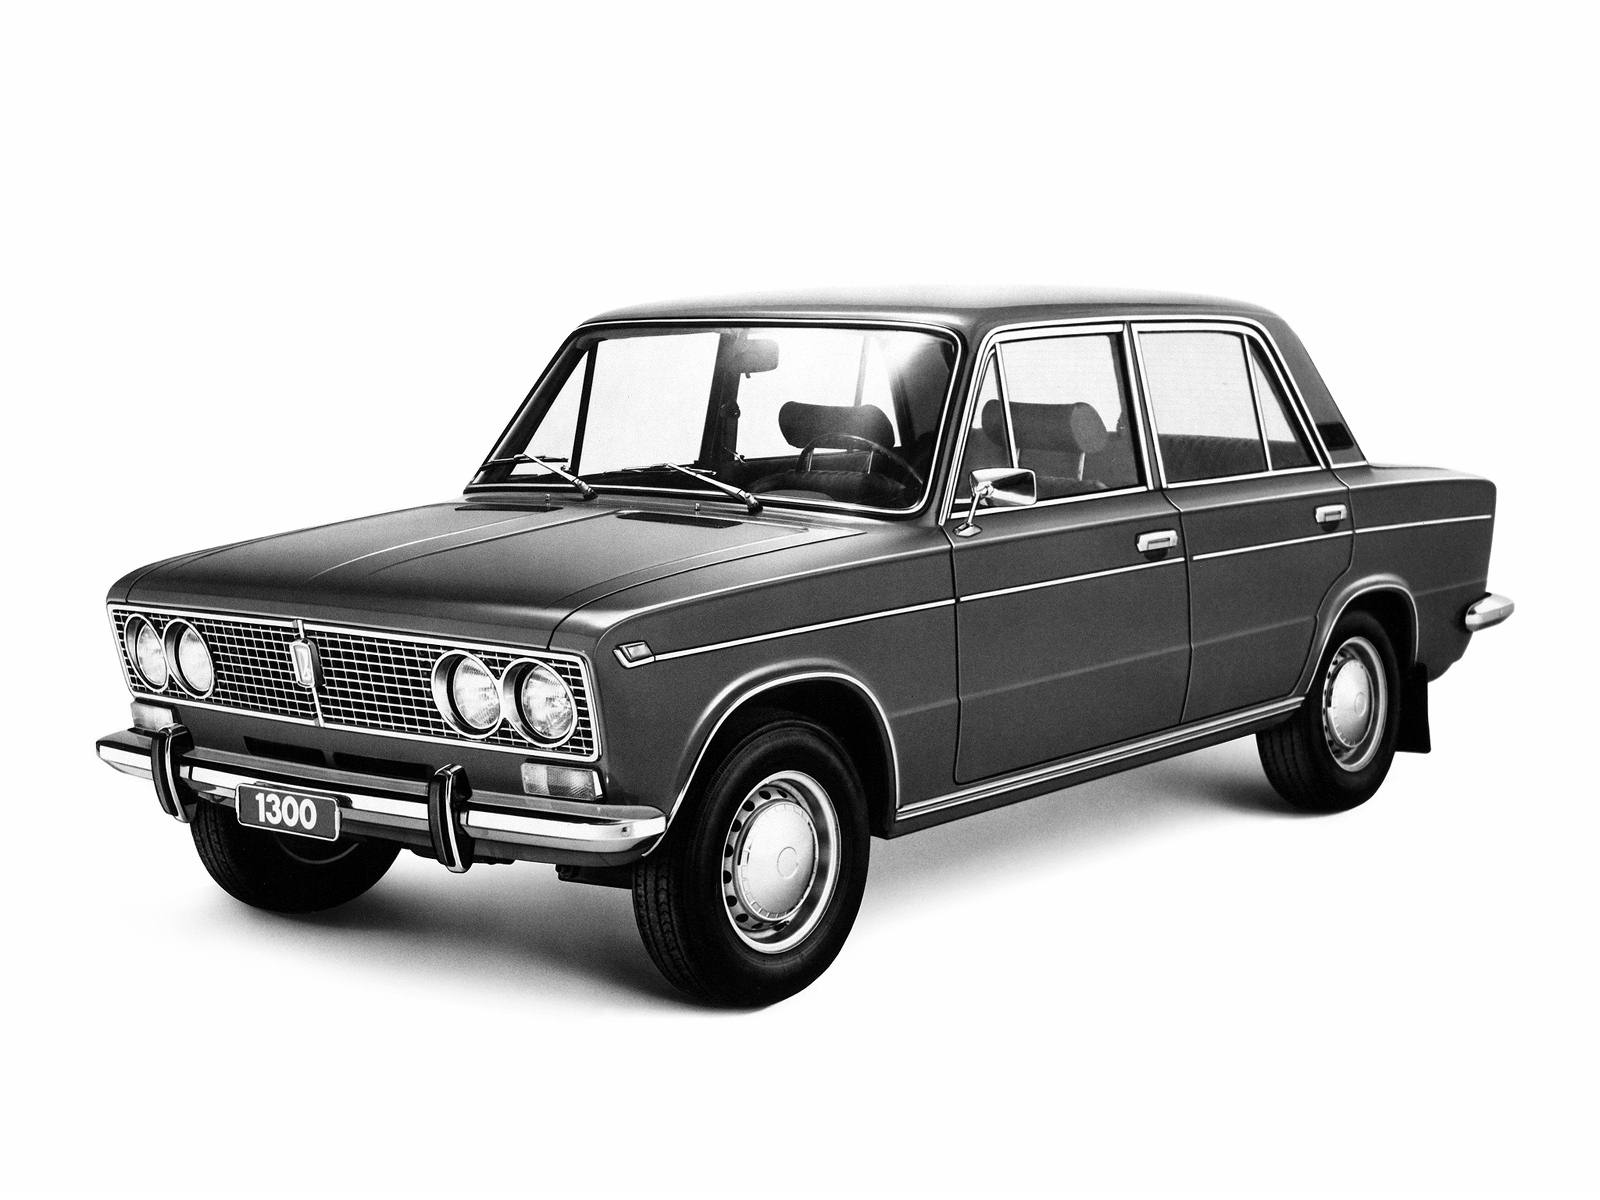 1979-1982. Lada 1300 S (21033)